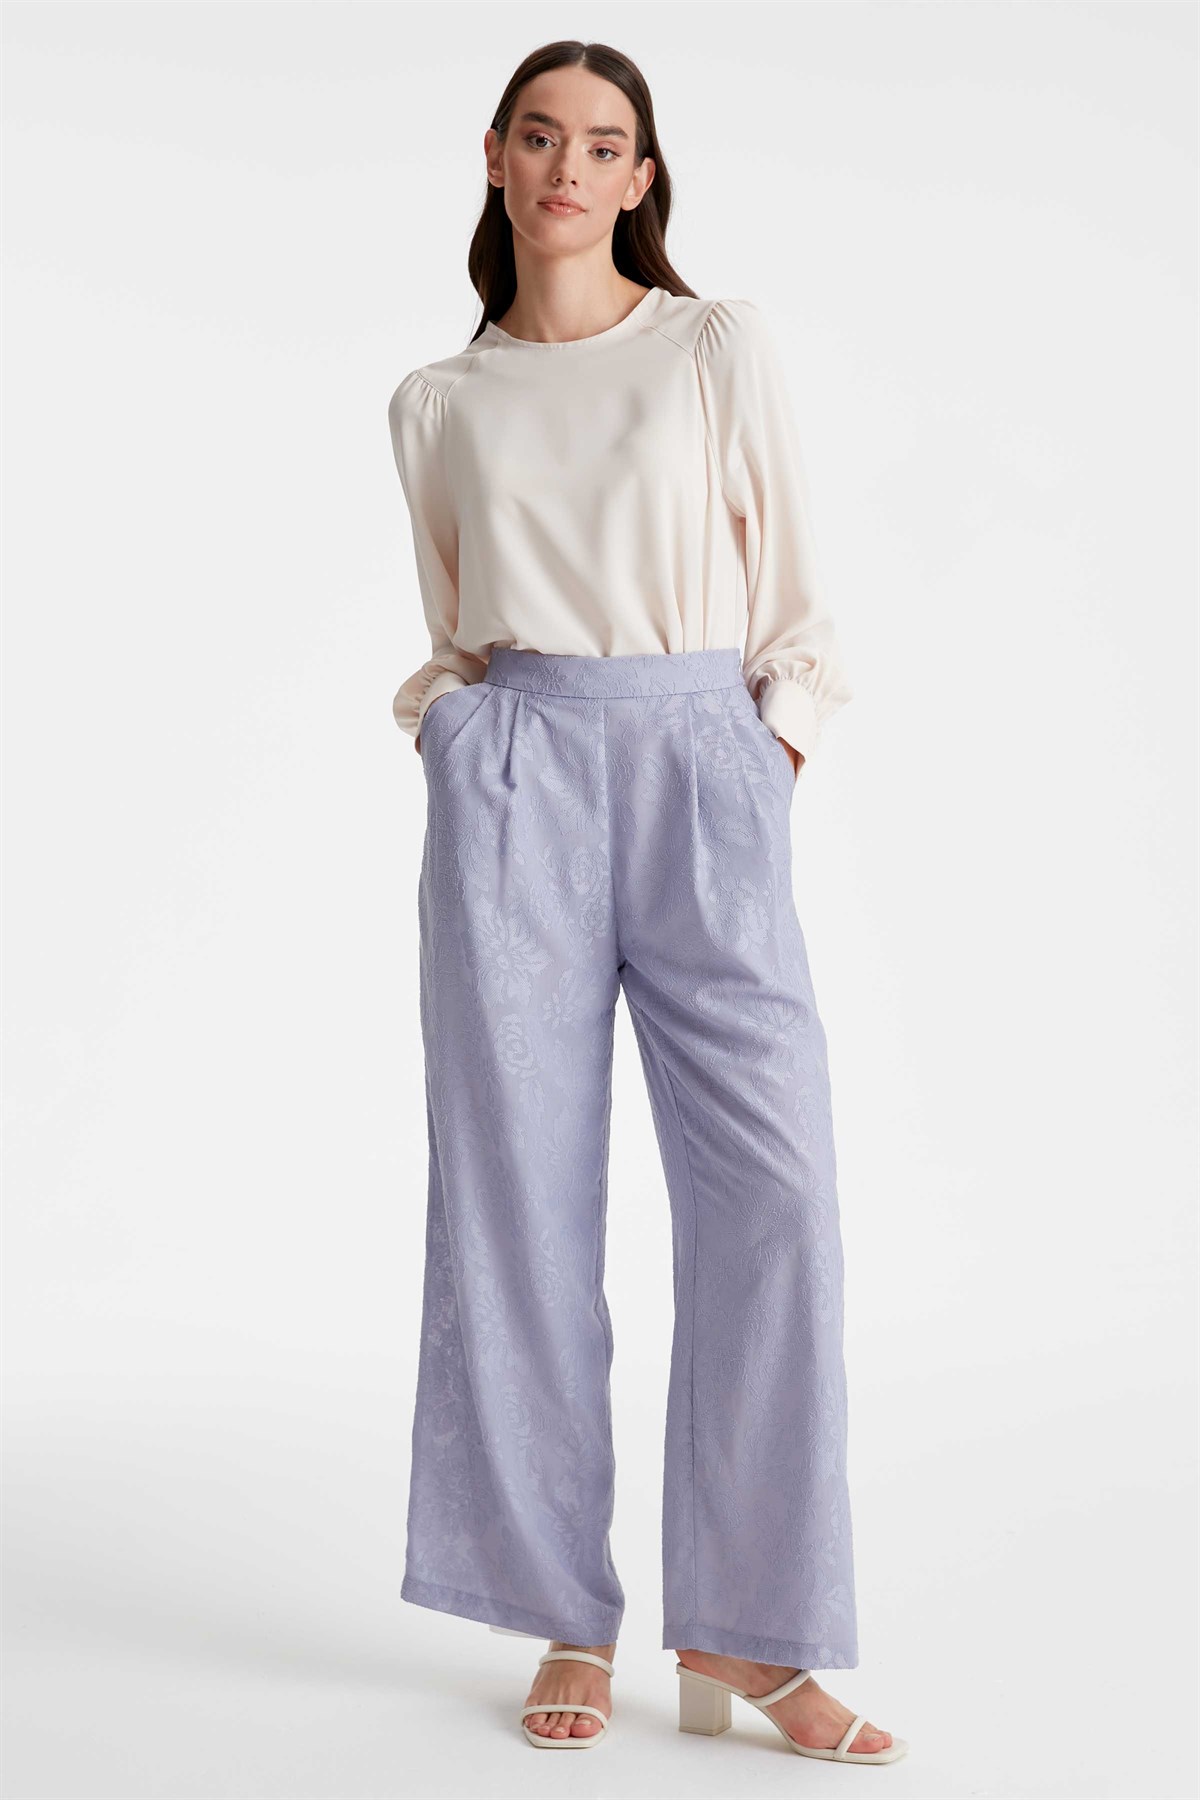 Jacquard Single Pile Trousers - Lilac